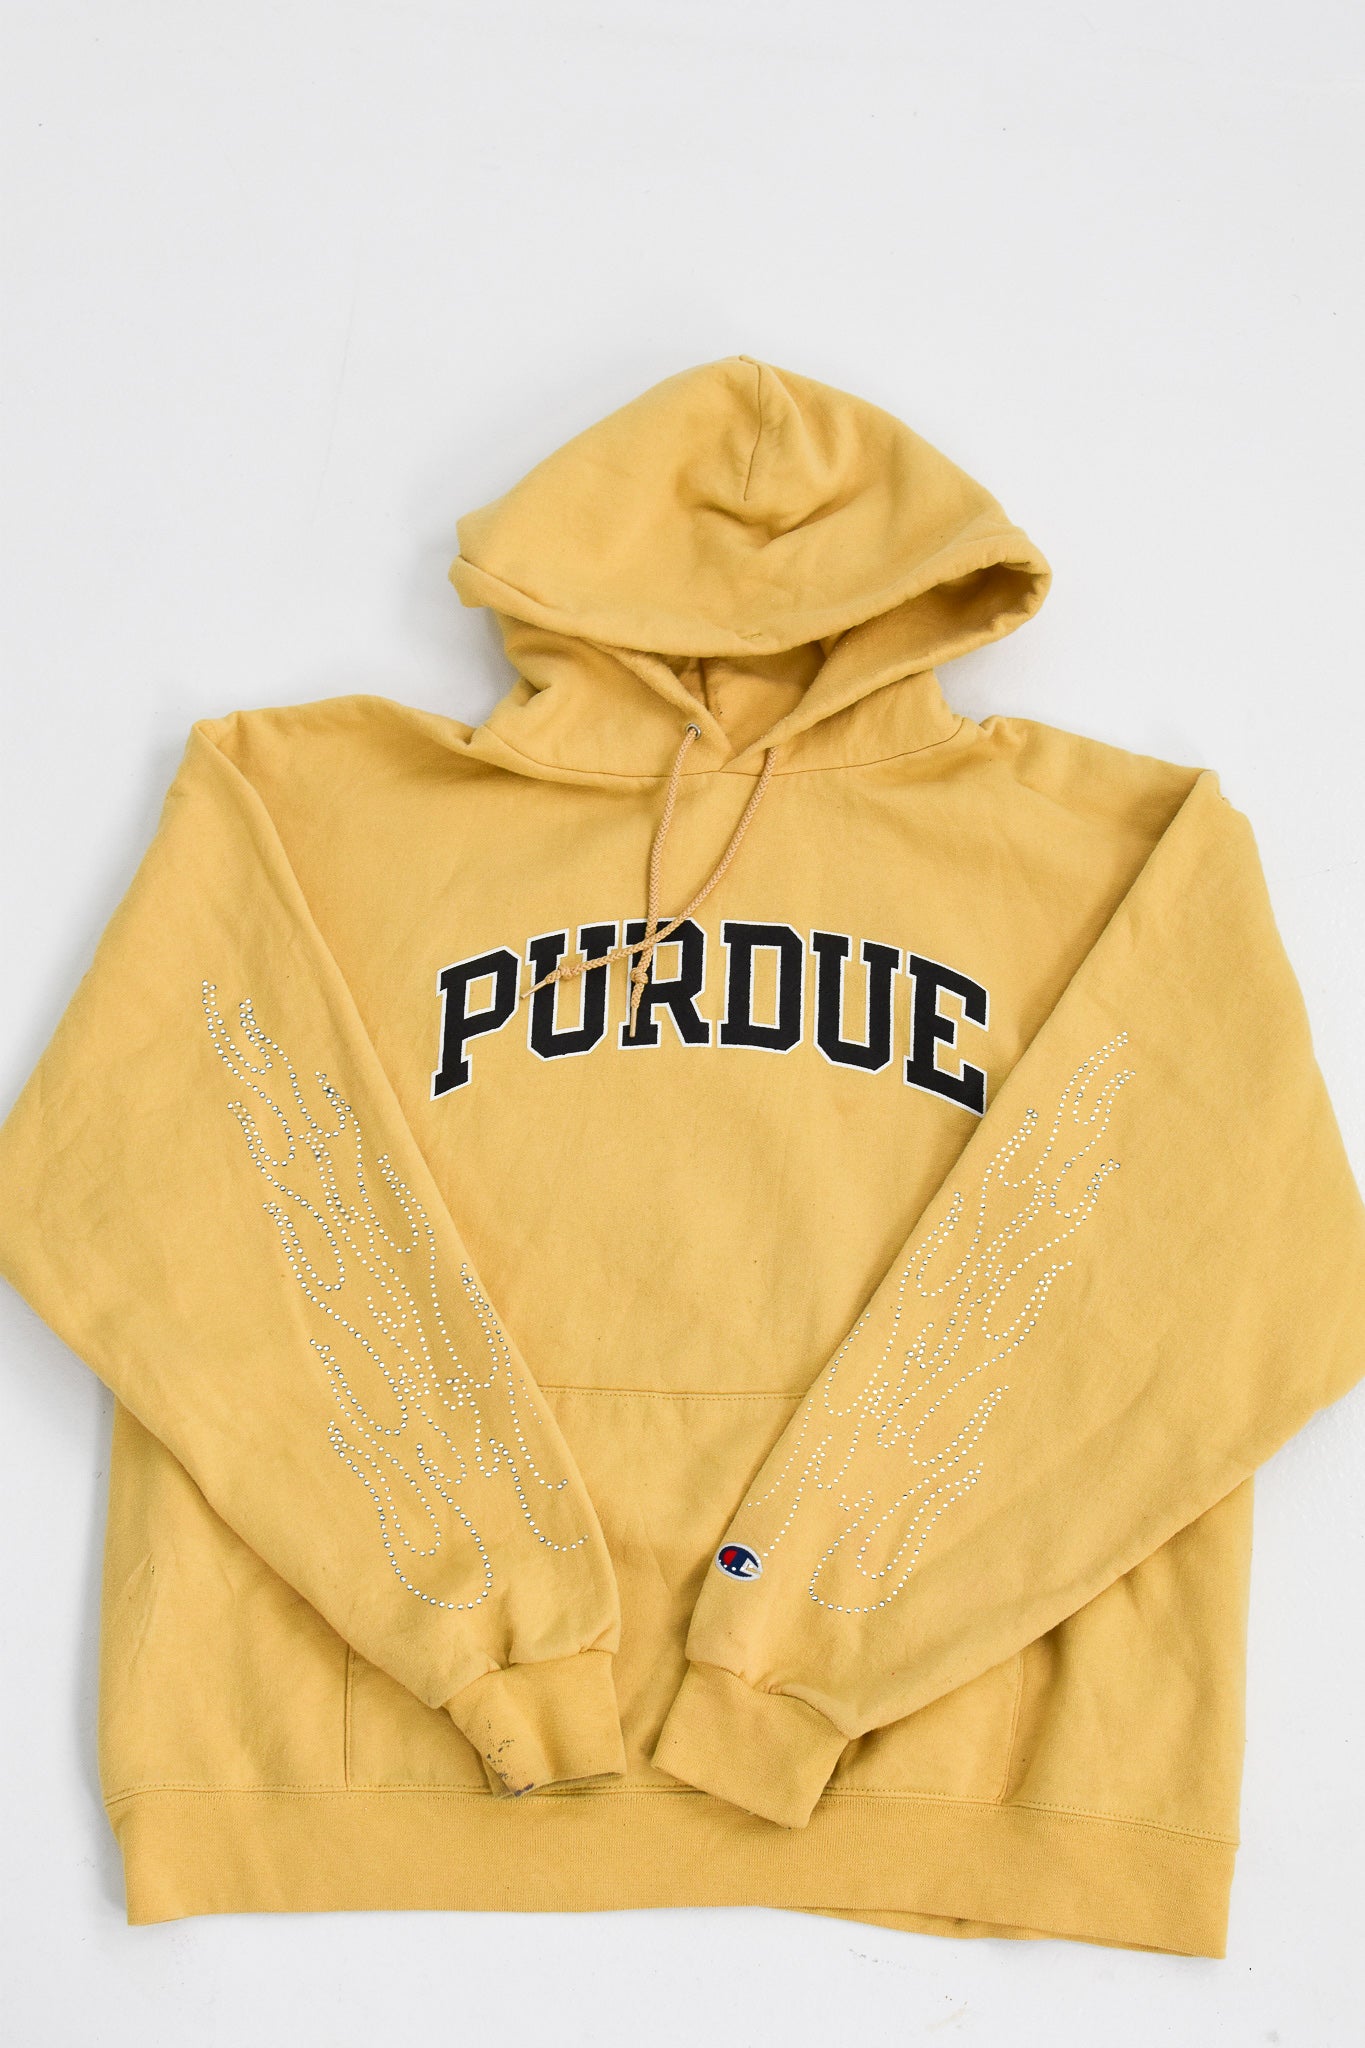 Upcycled Purdue Flame Sweatshirt